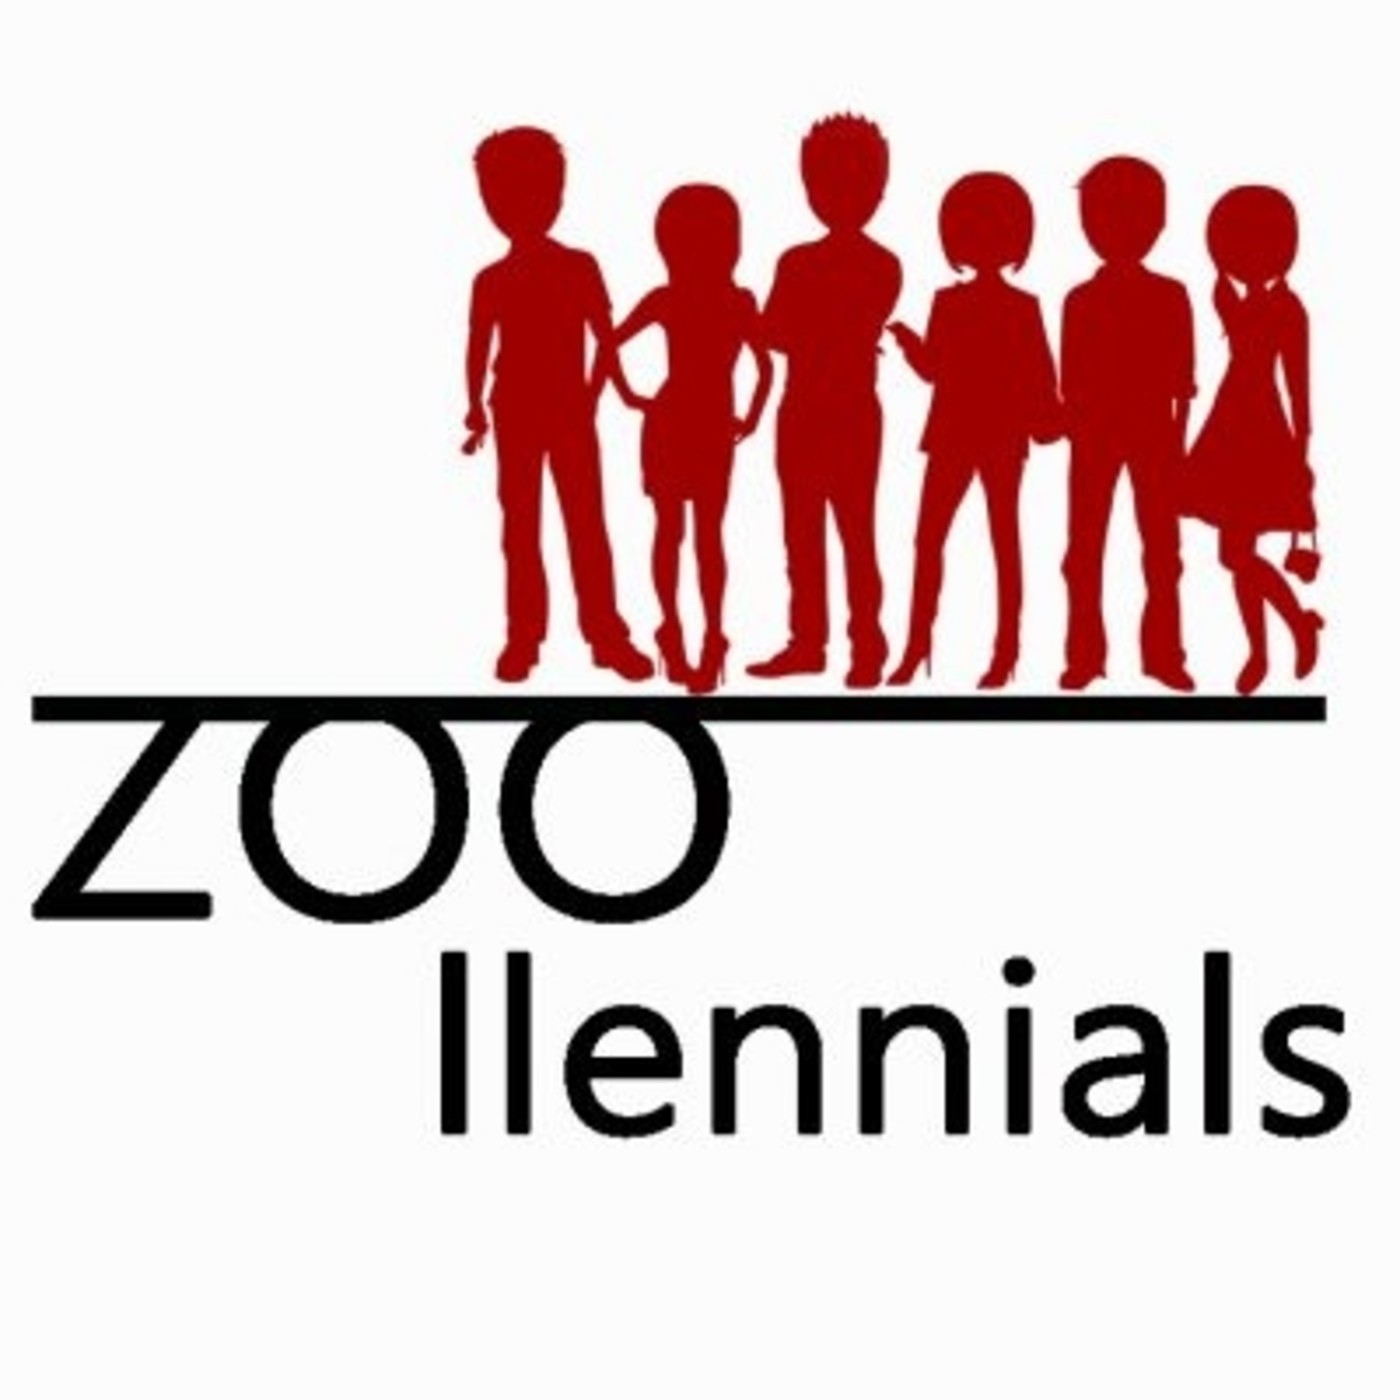 Zoollennials: Partyllennials, 3-XI-17